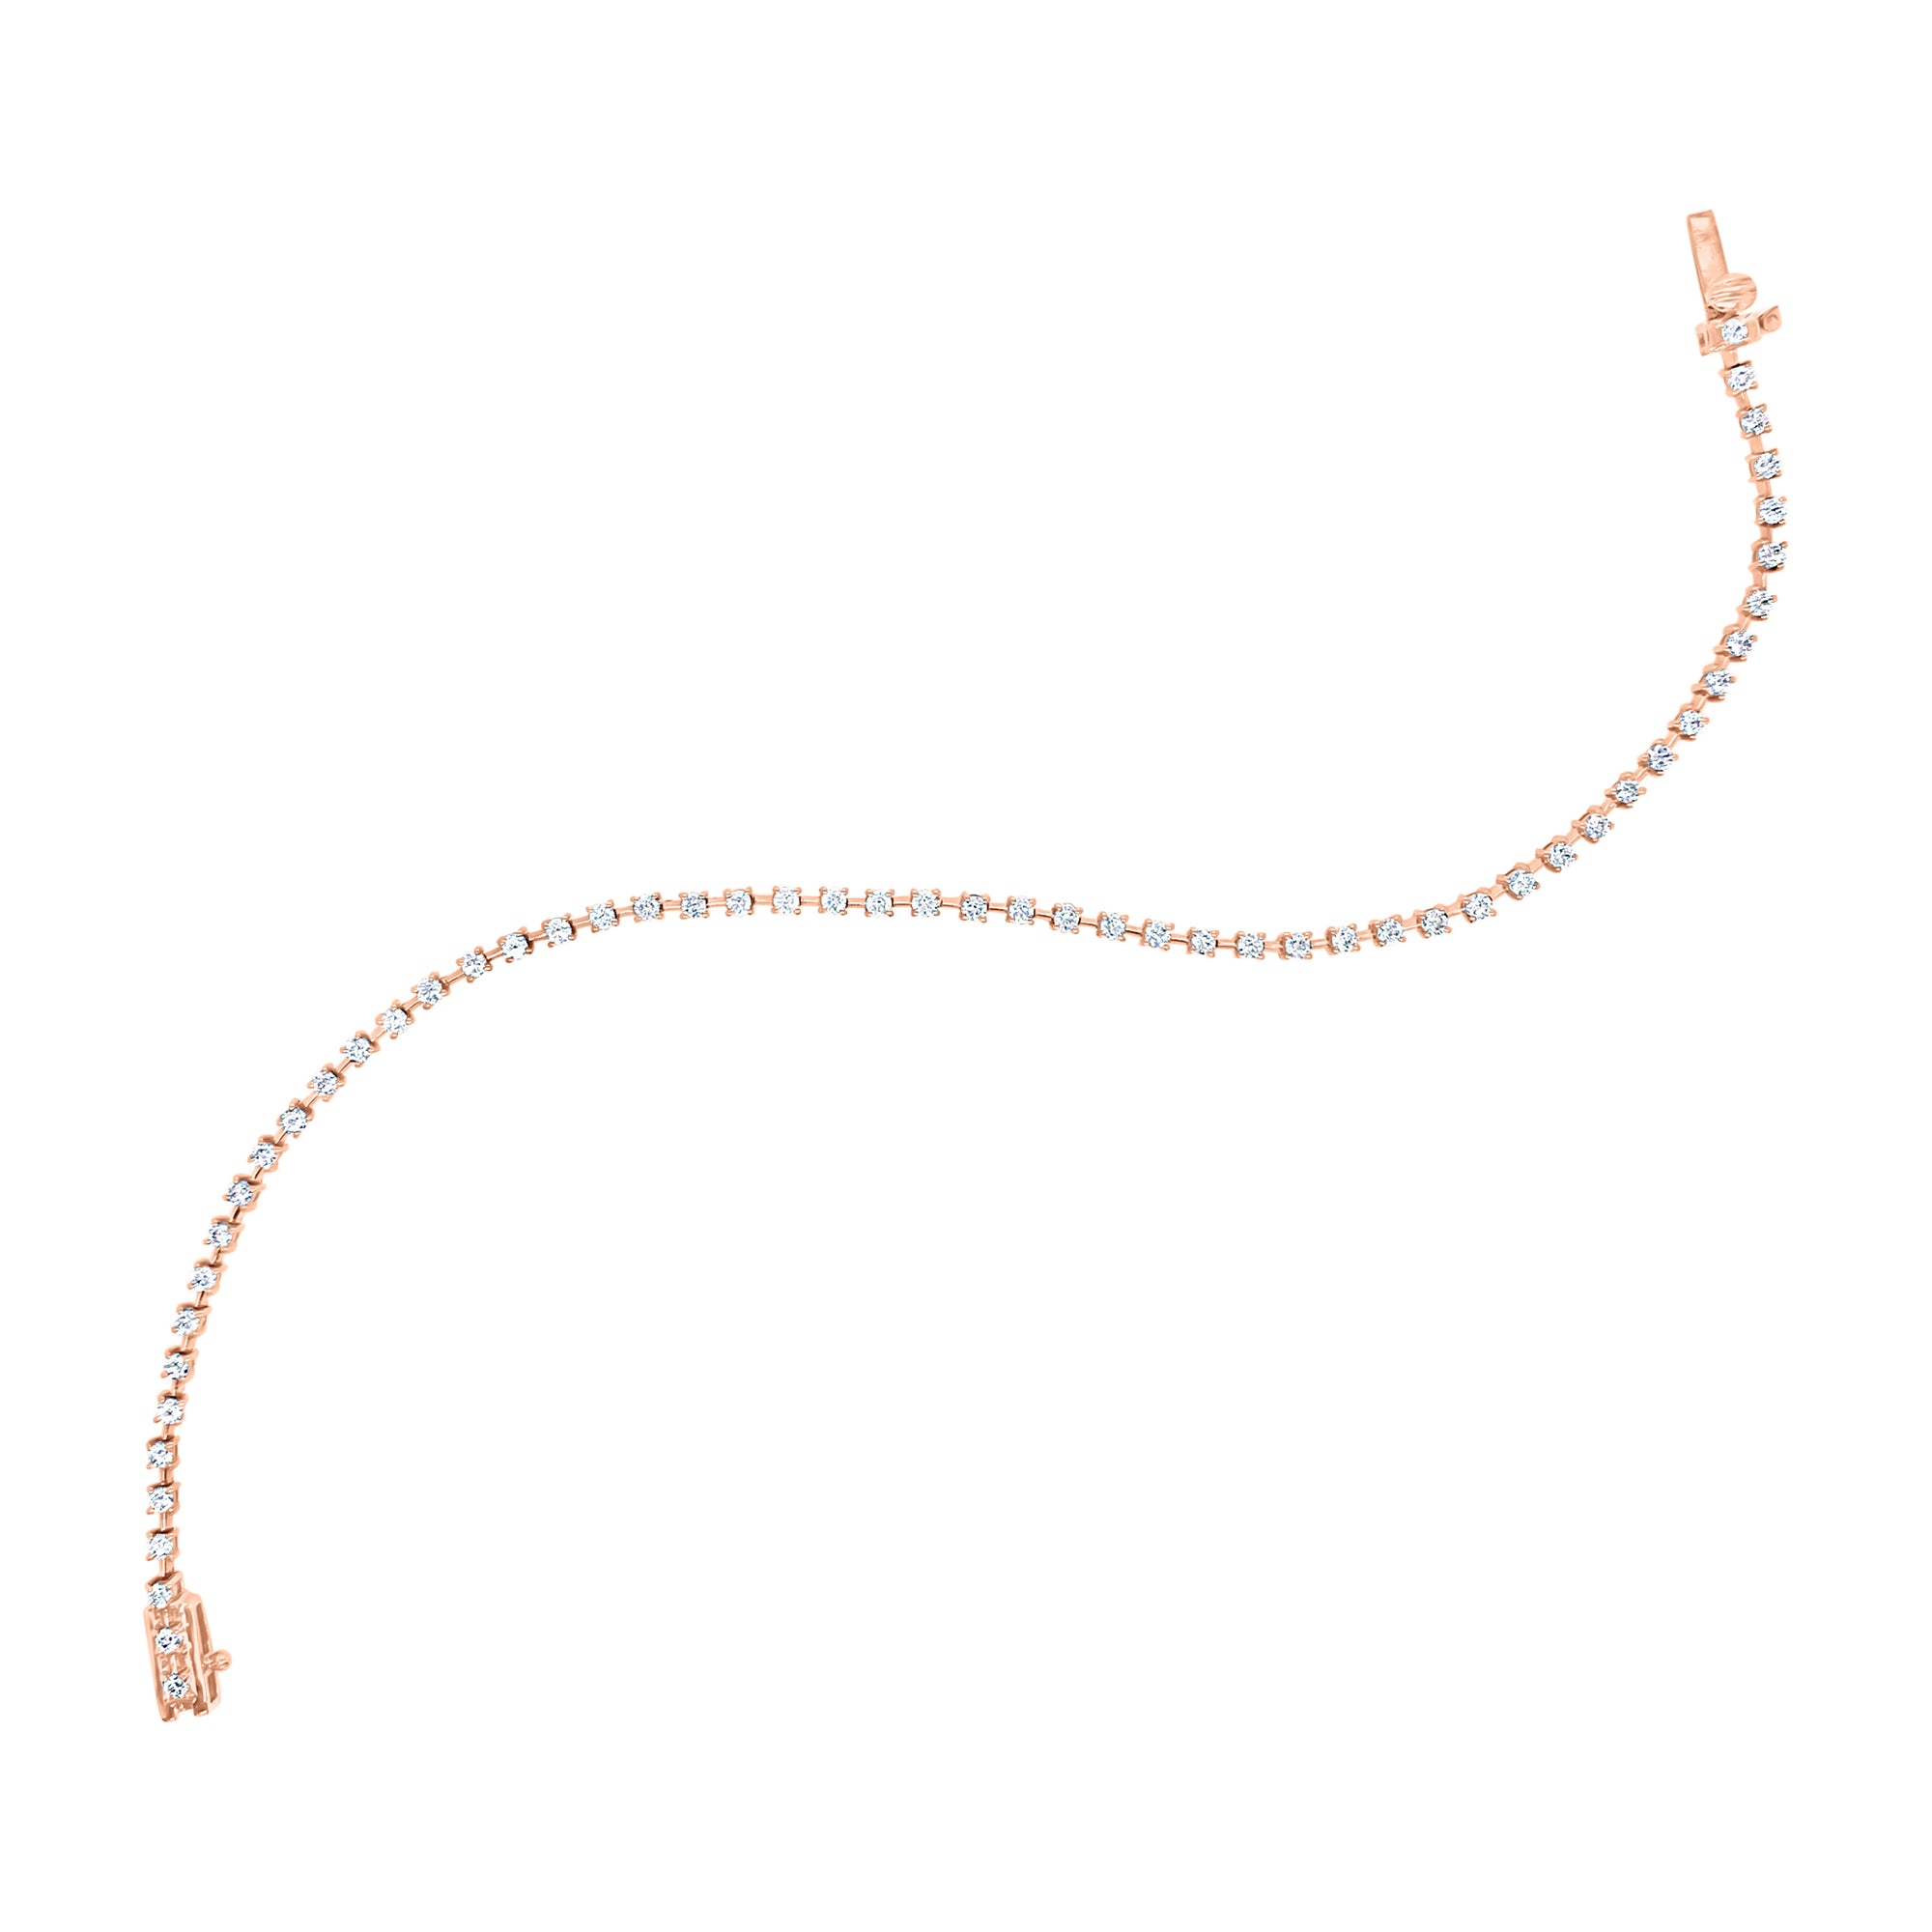 Prong-Set Diamond Fashion Bracelet -14k white gold weighing 4.66 grams -56 round diamonds totaling 1.17 carats